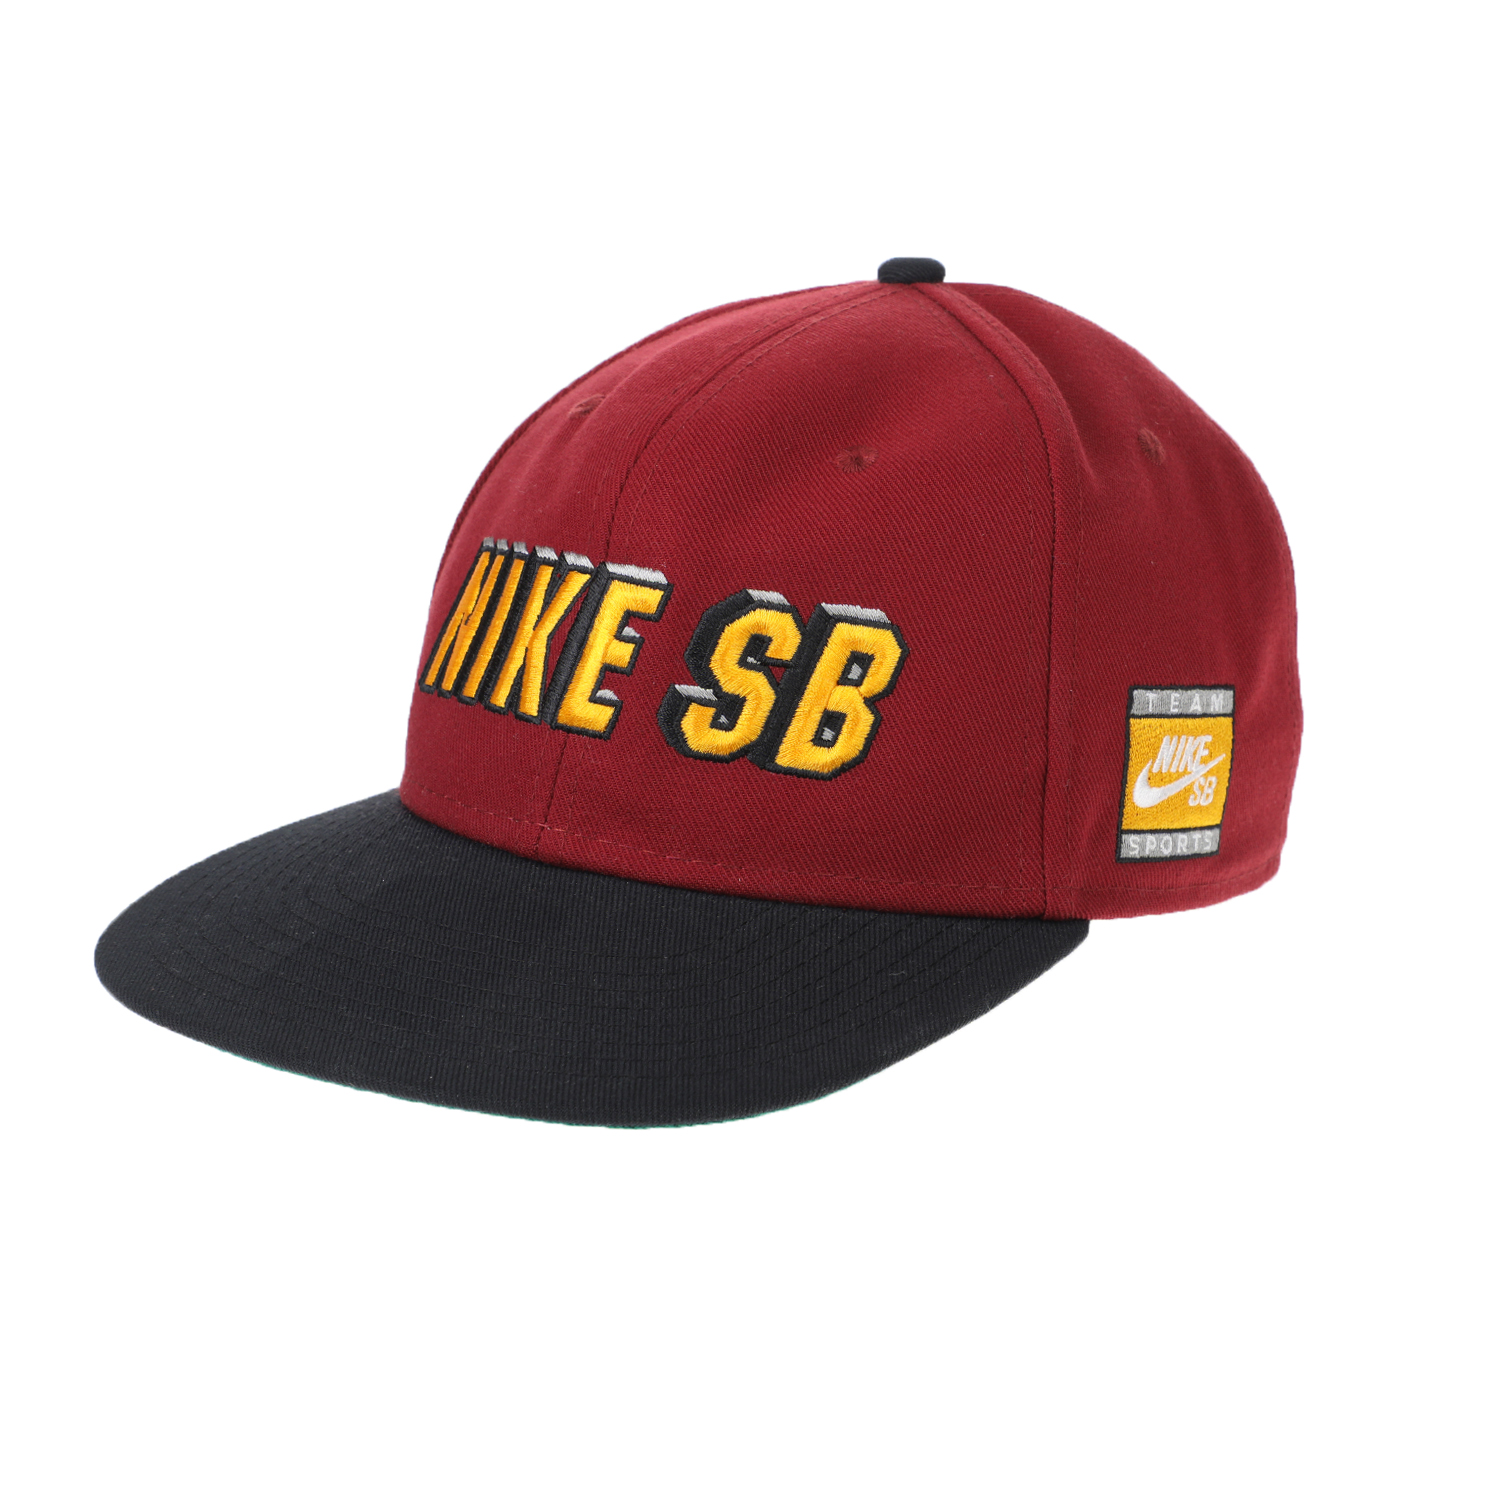 Γυναικεία/Αξεσουάρ/Καπέλα/Αθλητικά NIKE - Unisex καπέλο NIKE PRO CAP SB μπορντό